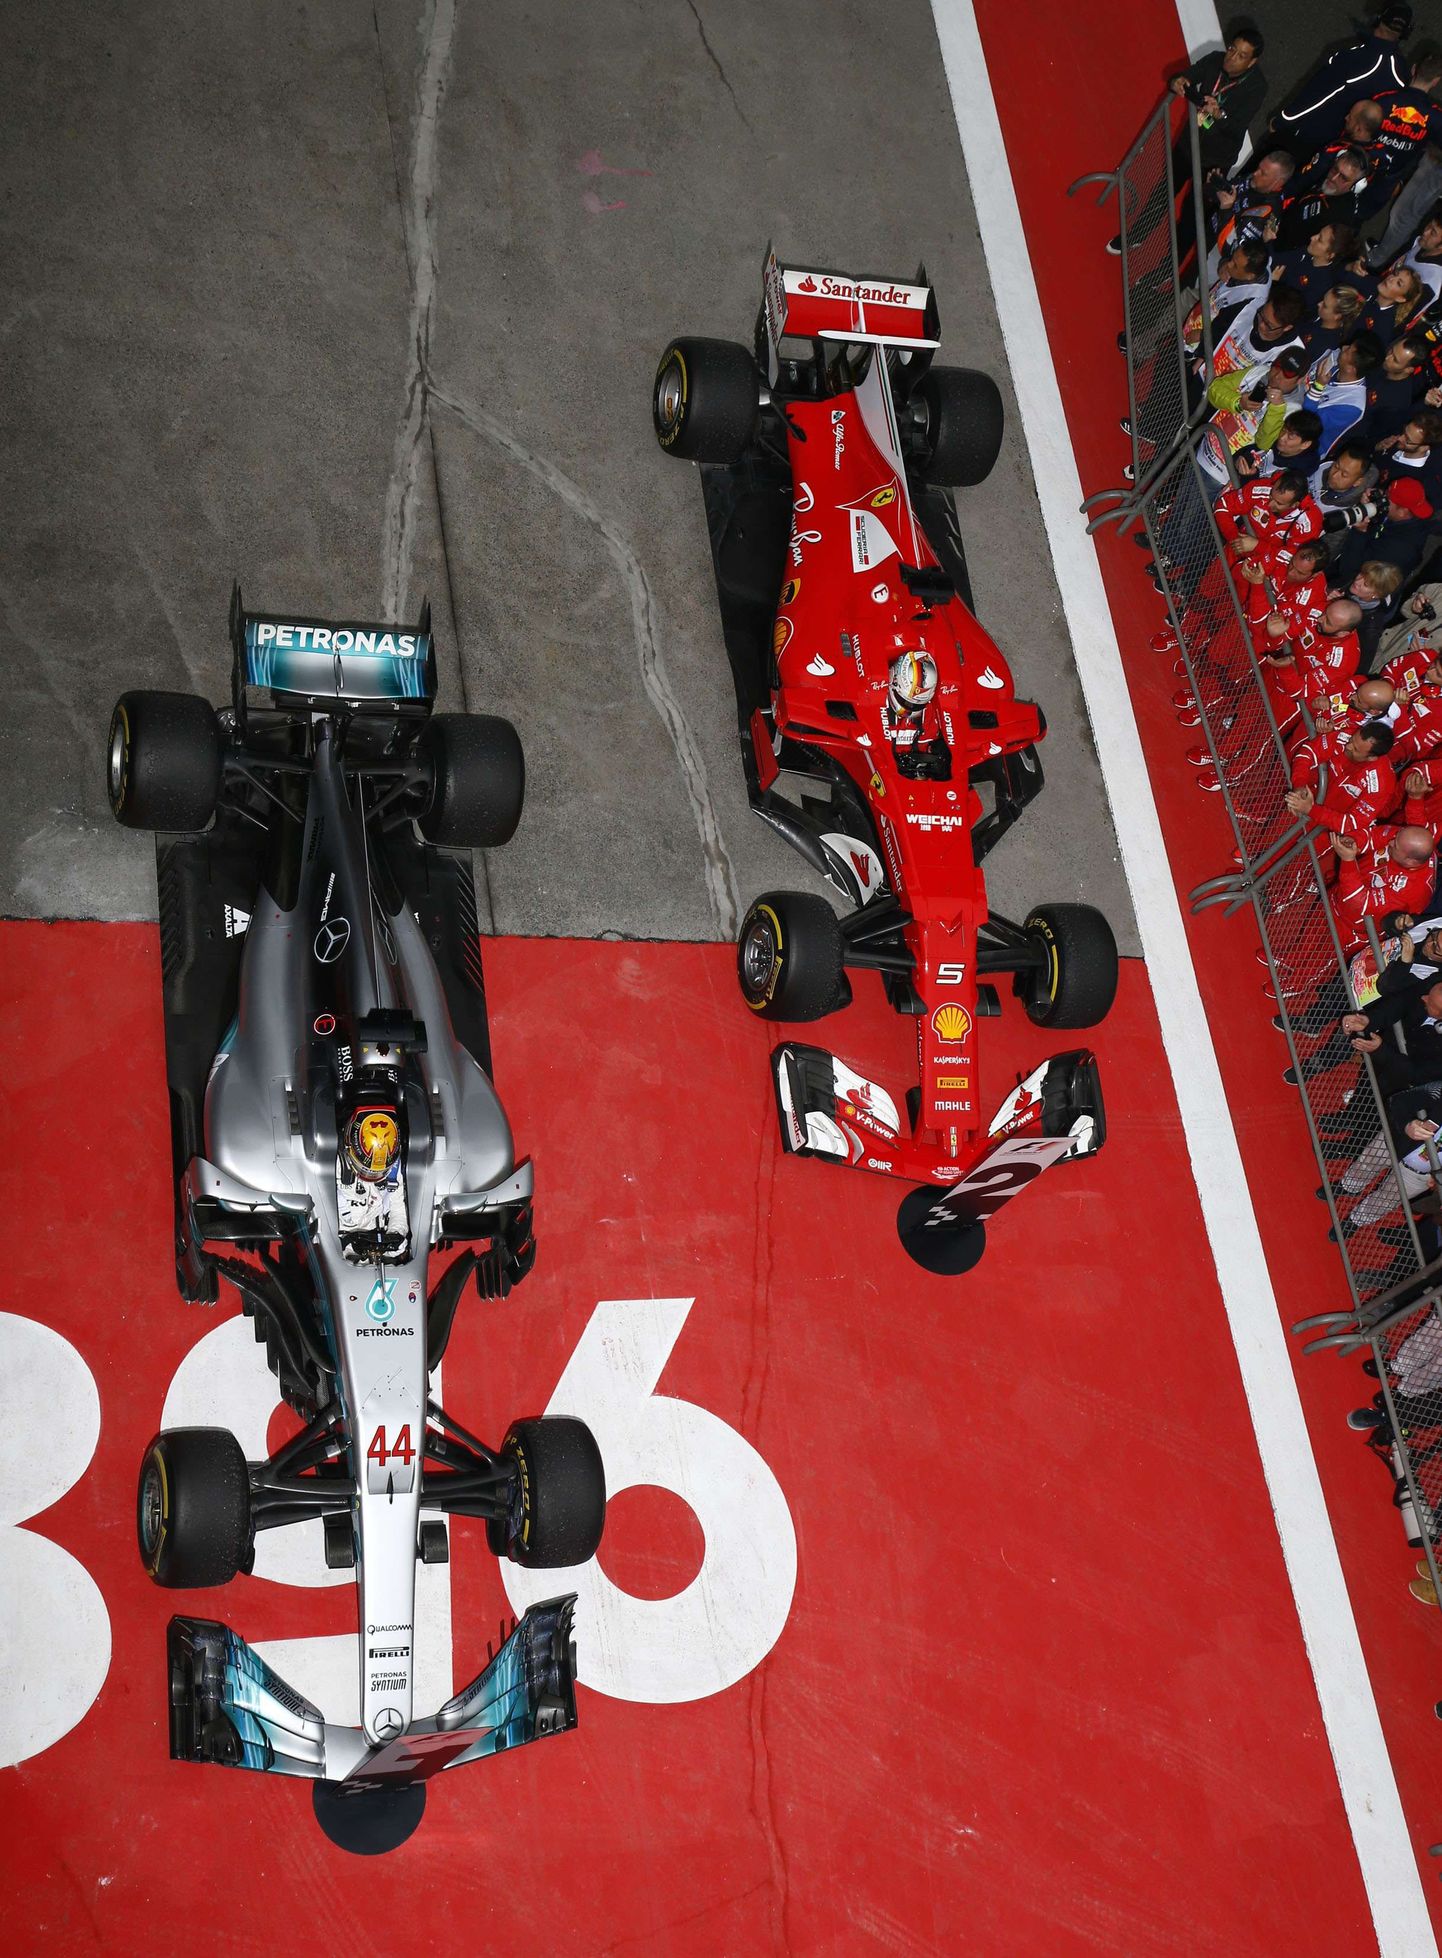 Lewis Hamilton ja Sebastian Vettel